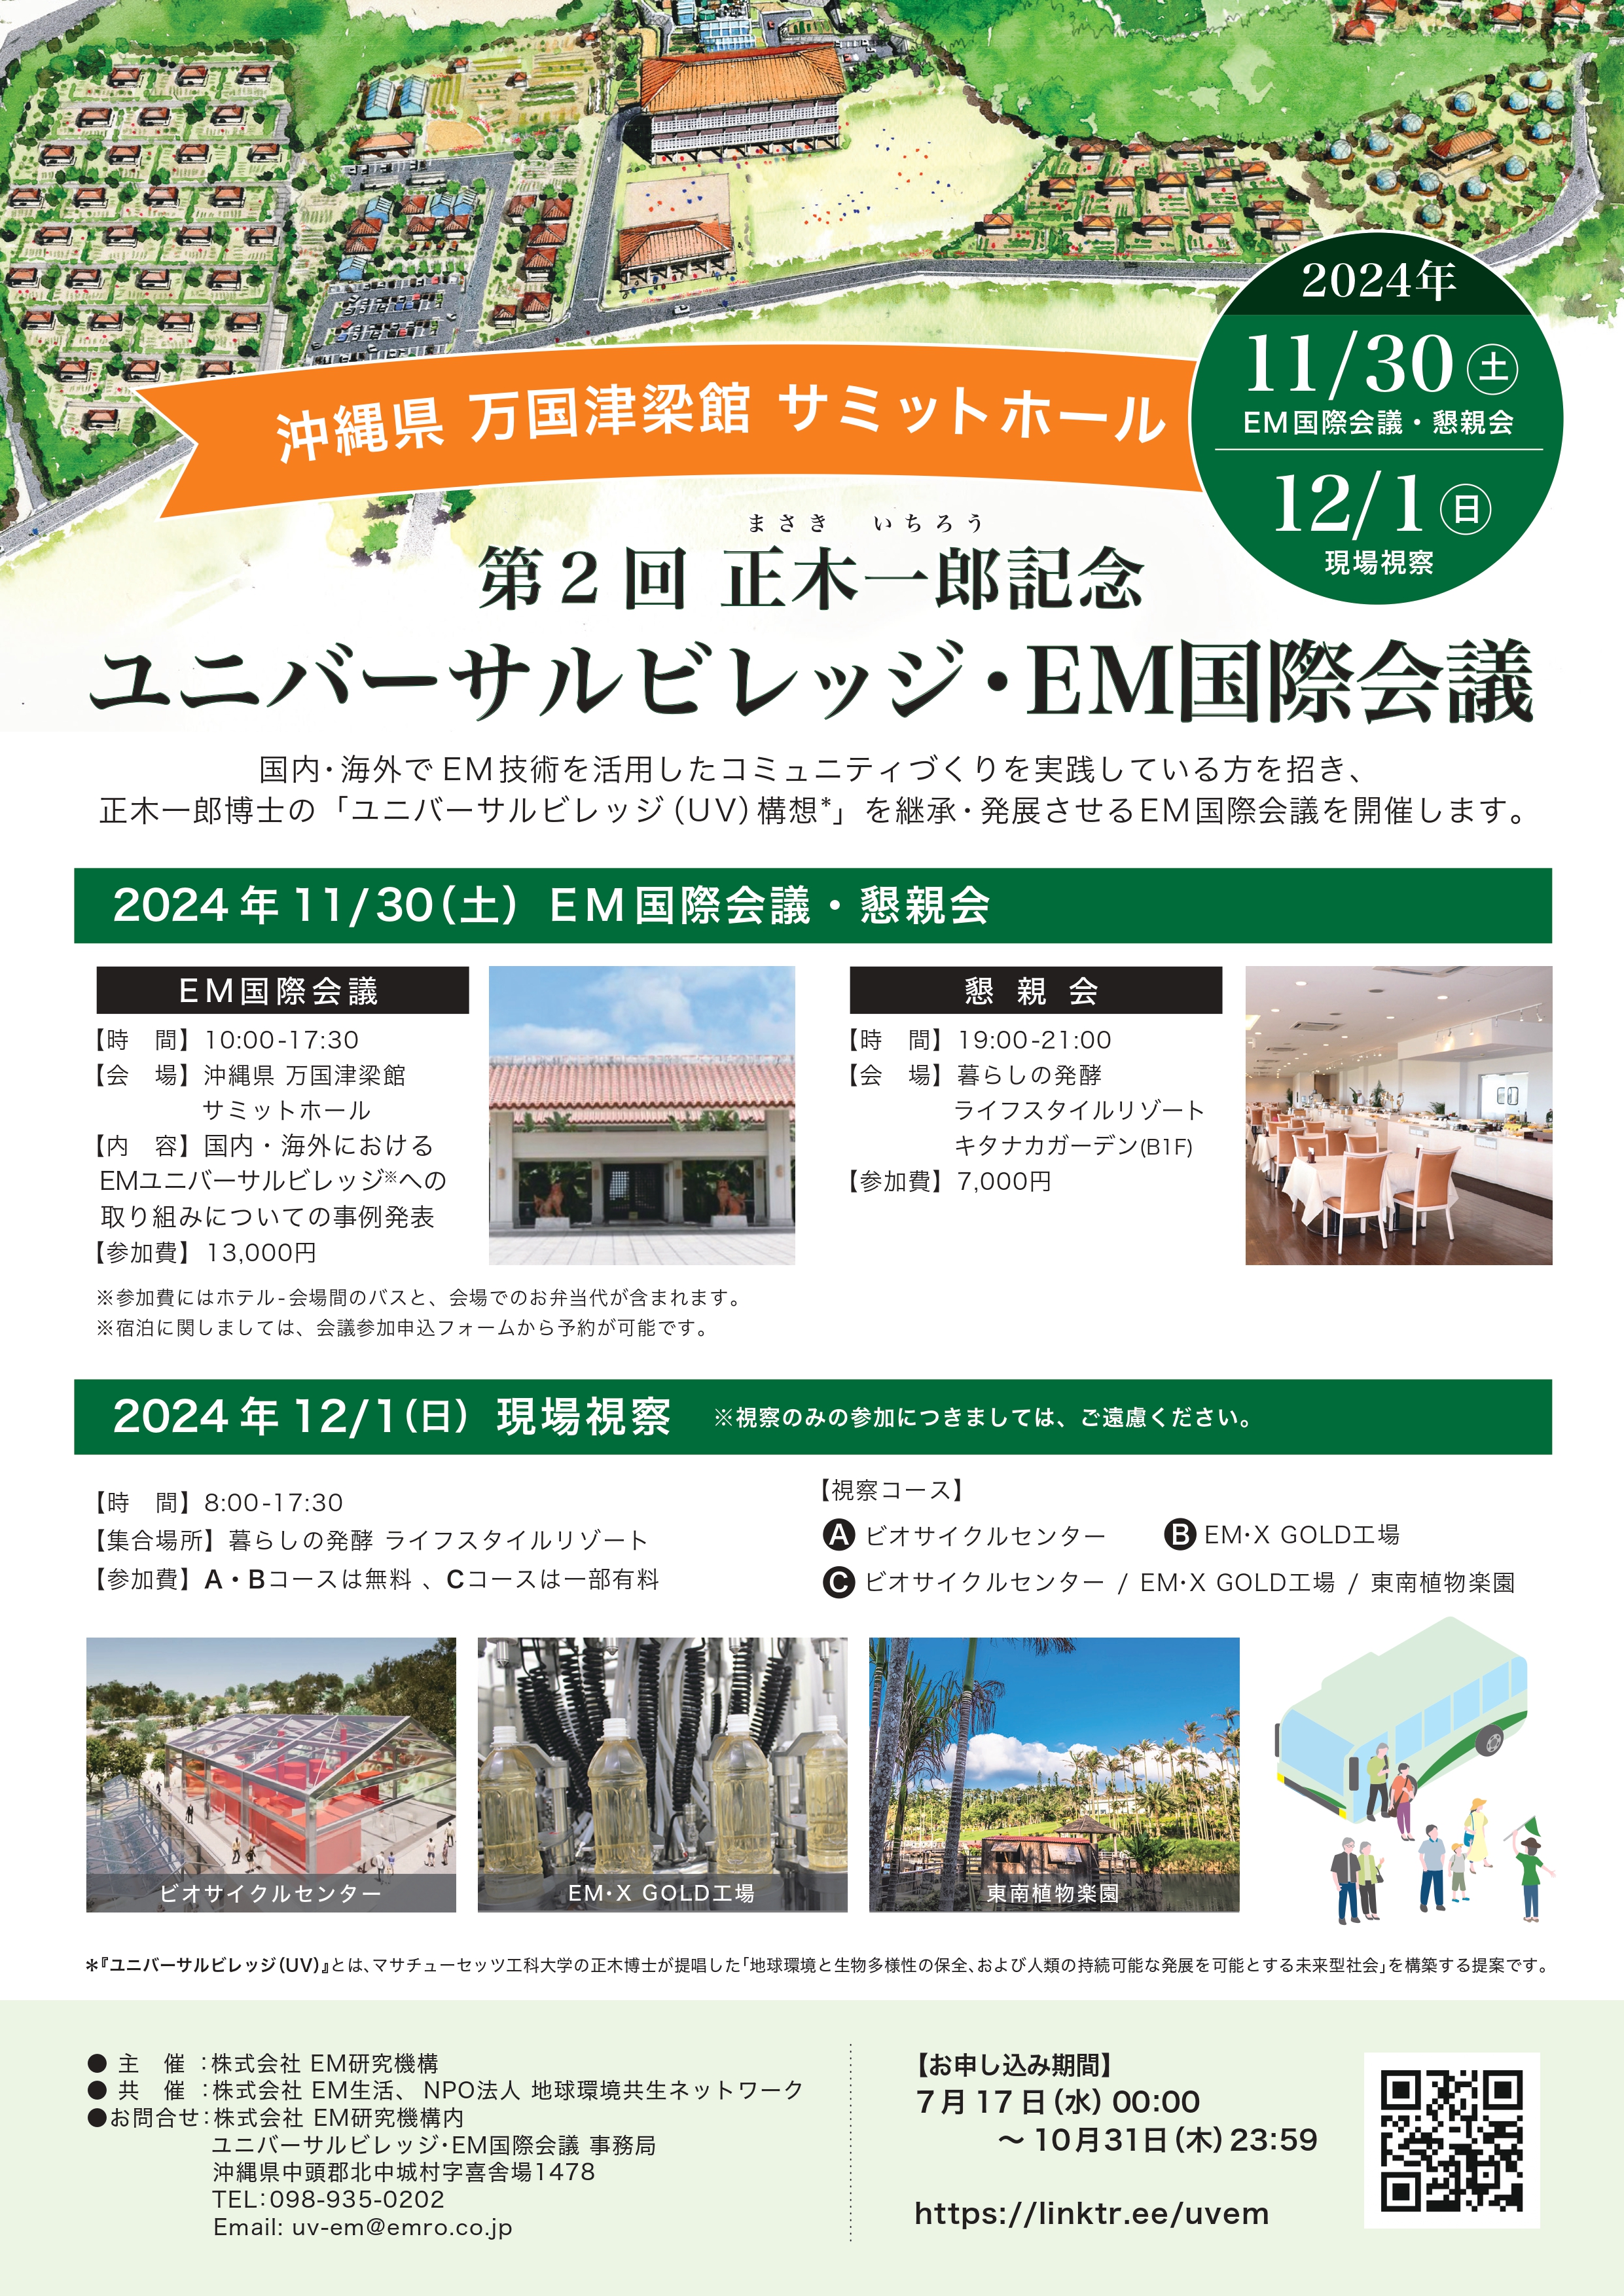 【イベント】第2回正木一郎記念ユニバーサルビレッジ・EM国際会議（11/30,12/1開催） | EM研究機構